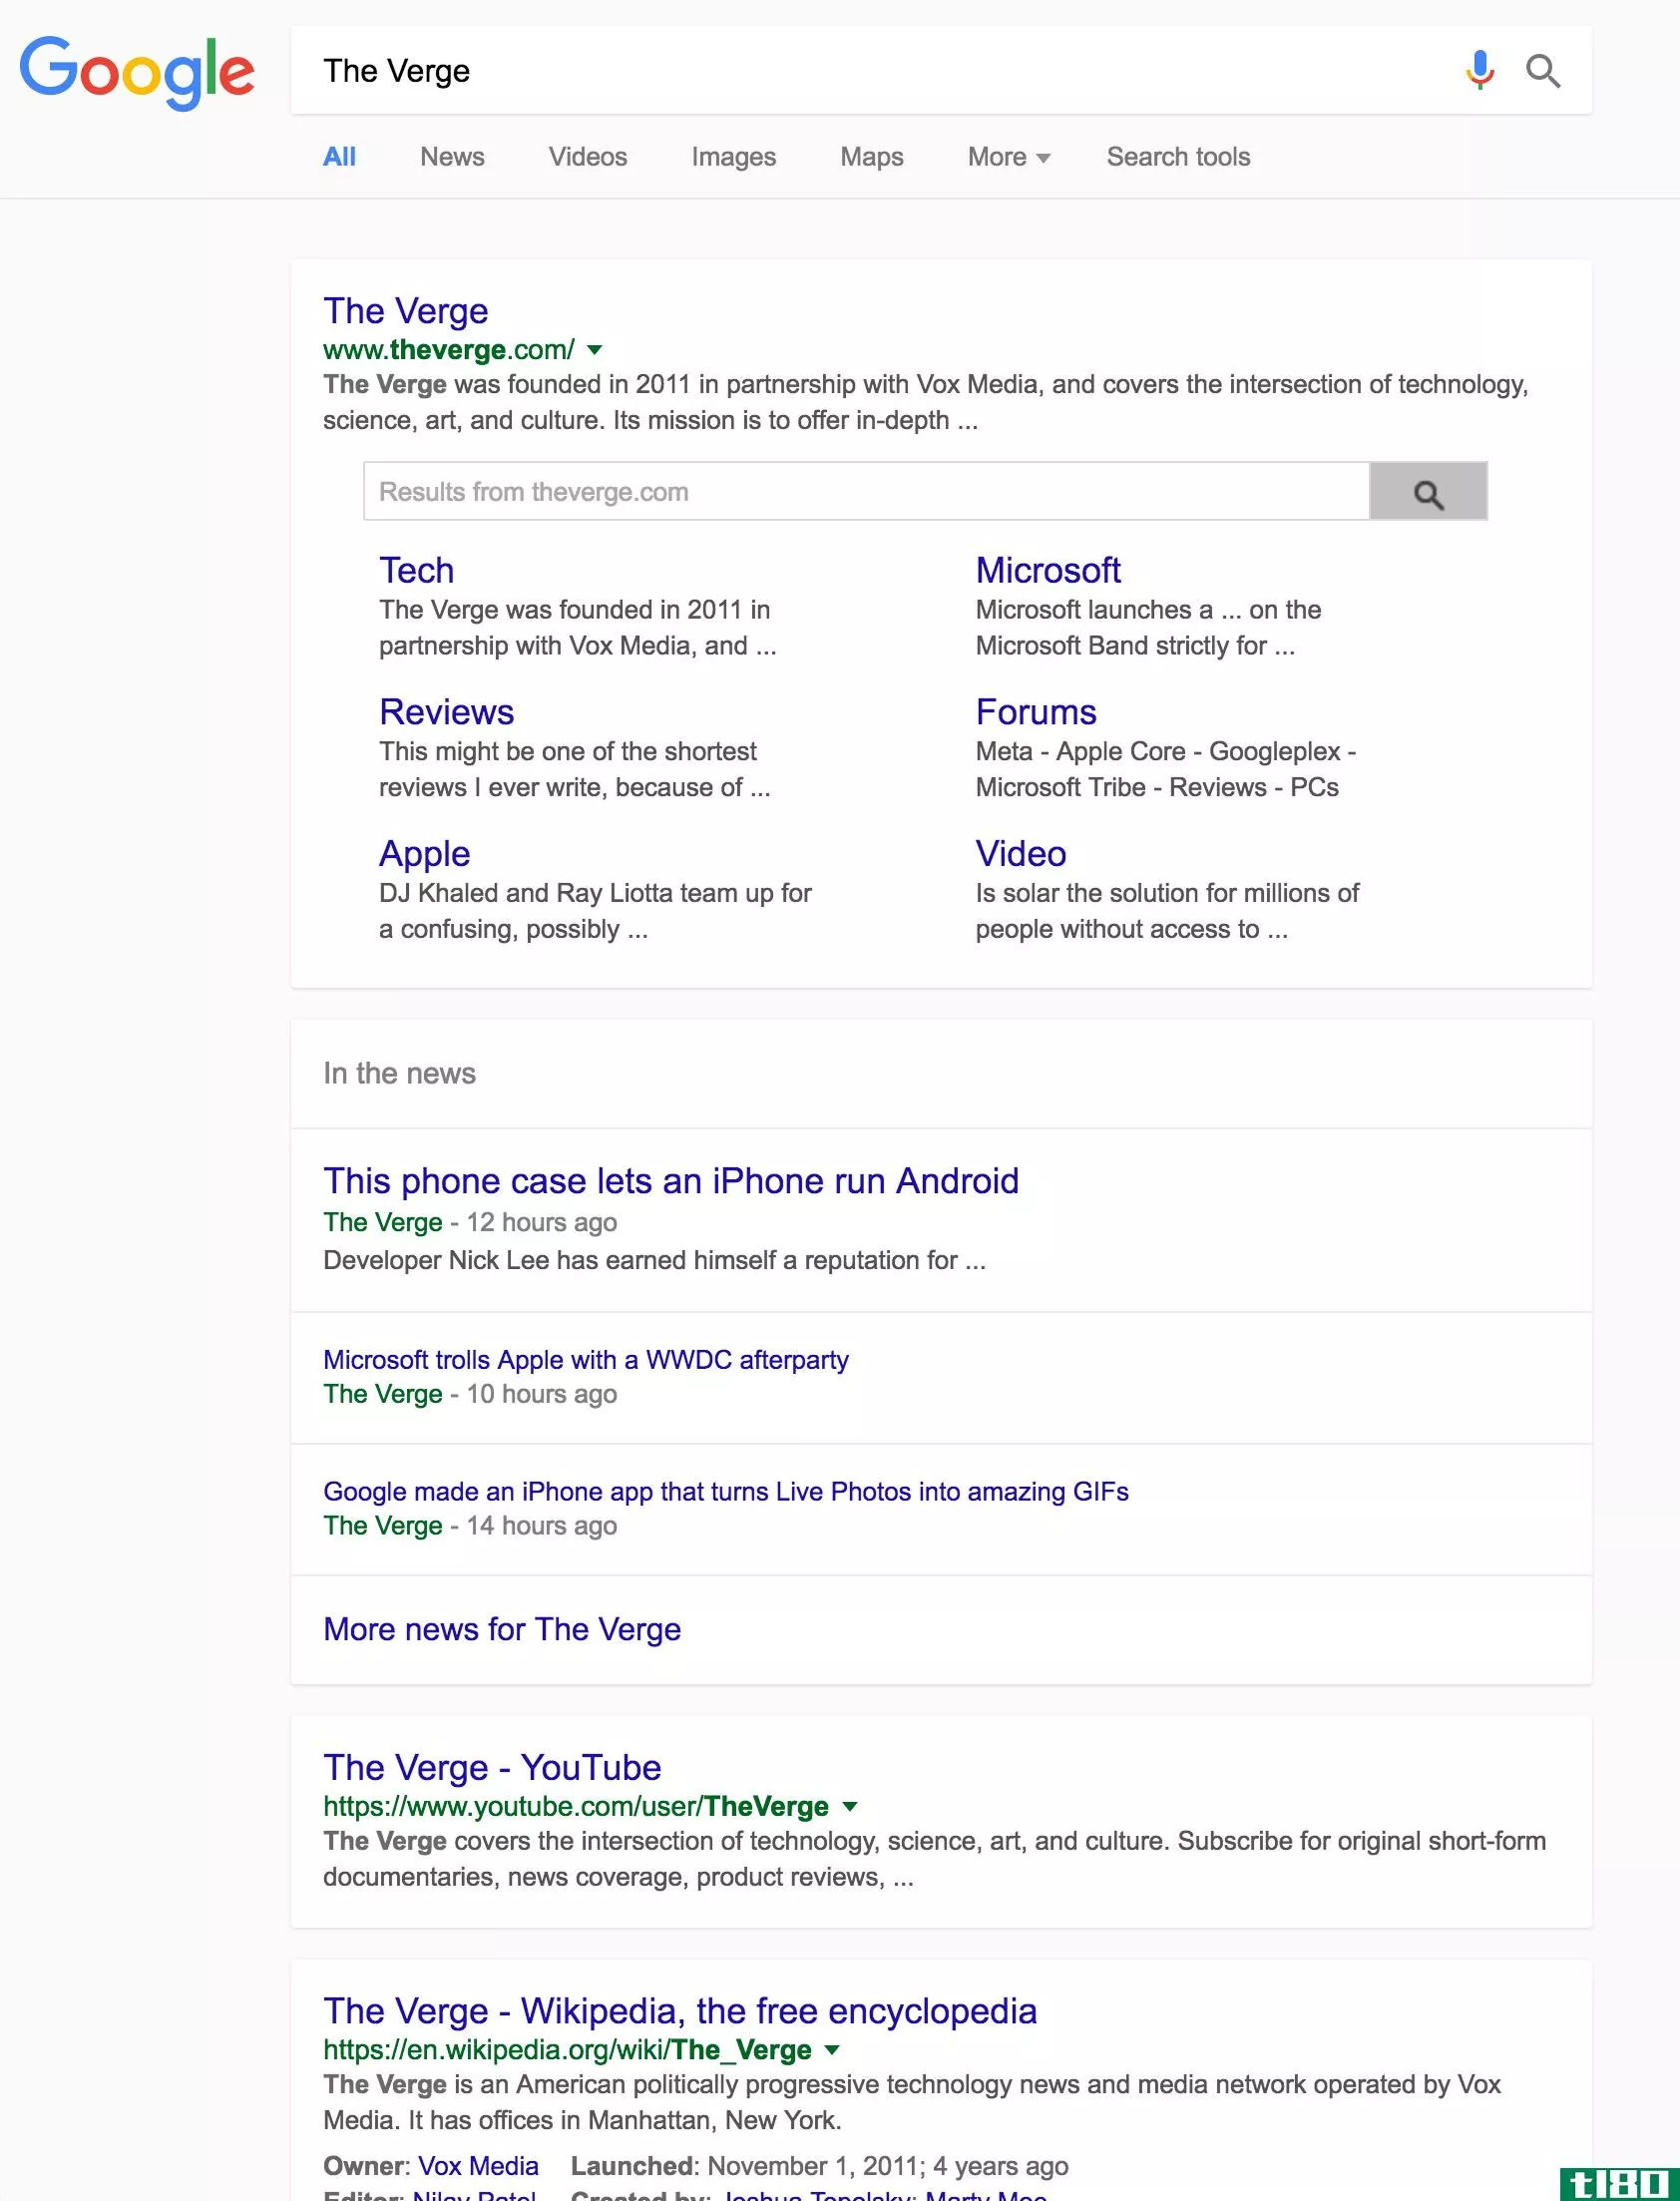 谷歌正在测试一种新的桌面搜索材料设计布局